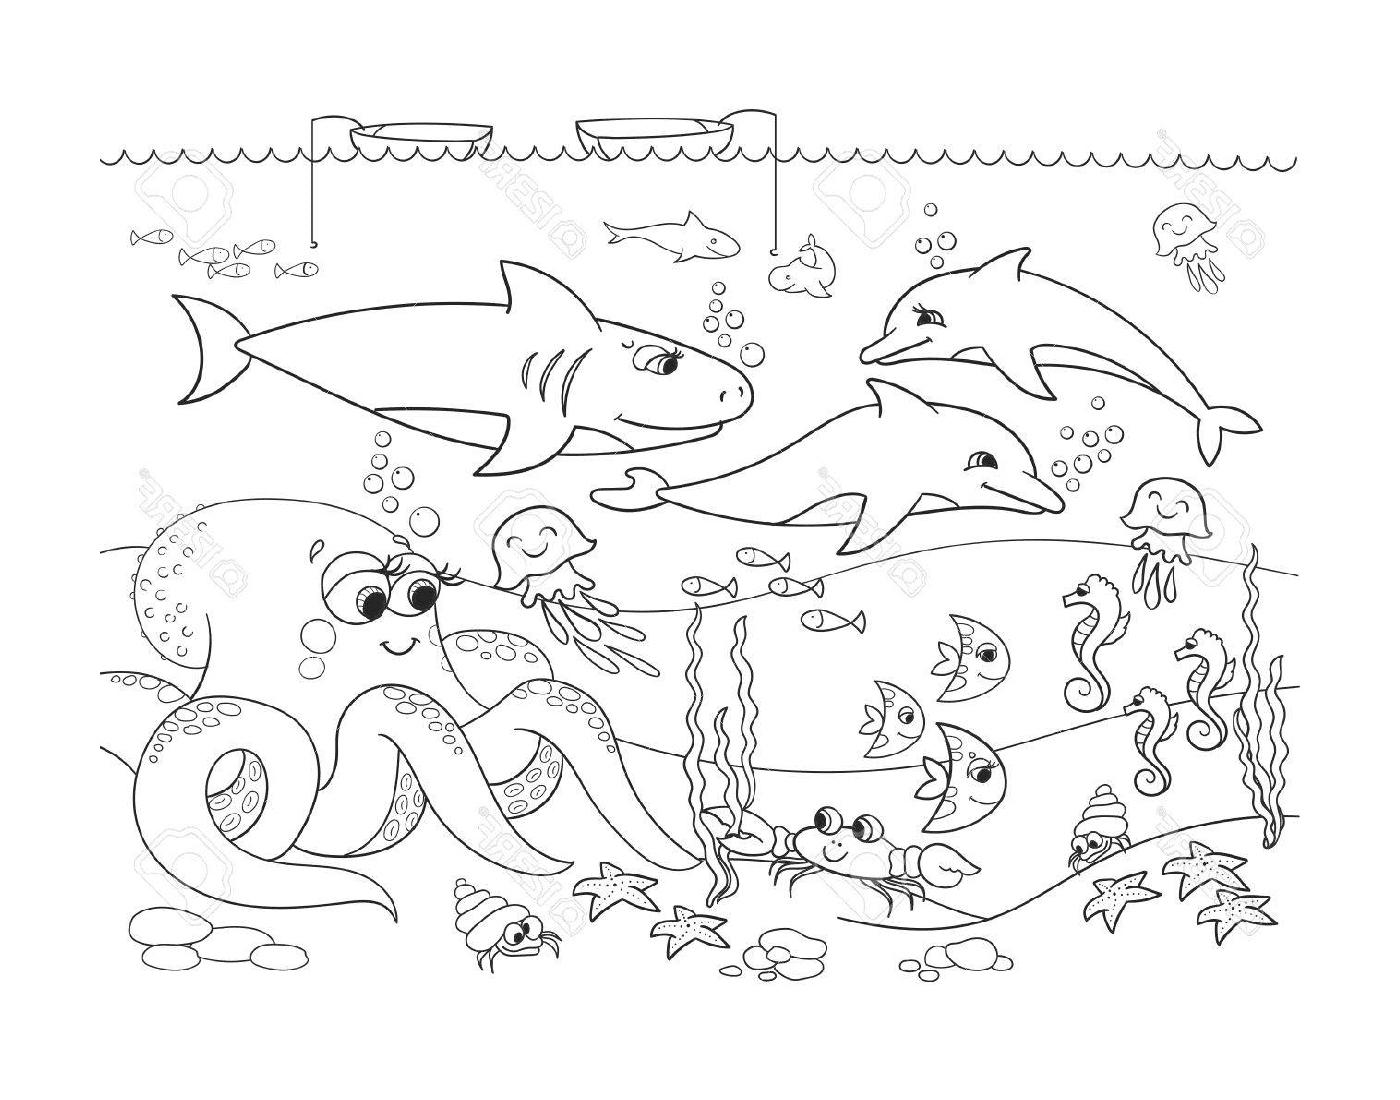  अनेक भिन्‍न जानवरों के साथ समुद्र - तल का दृश्‍य 